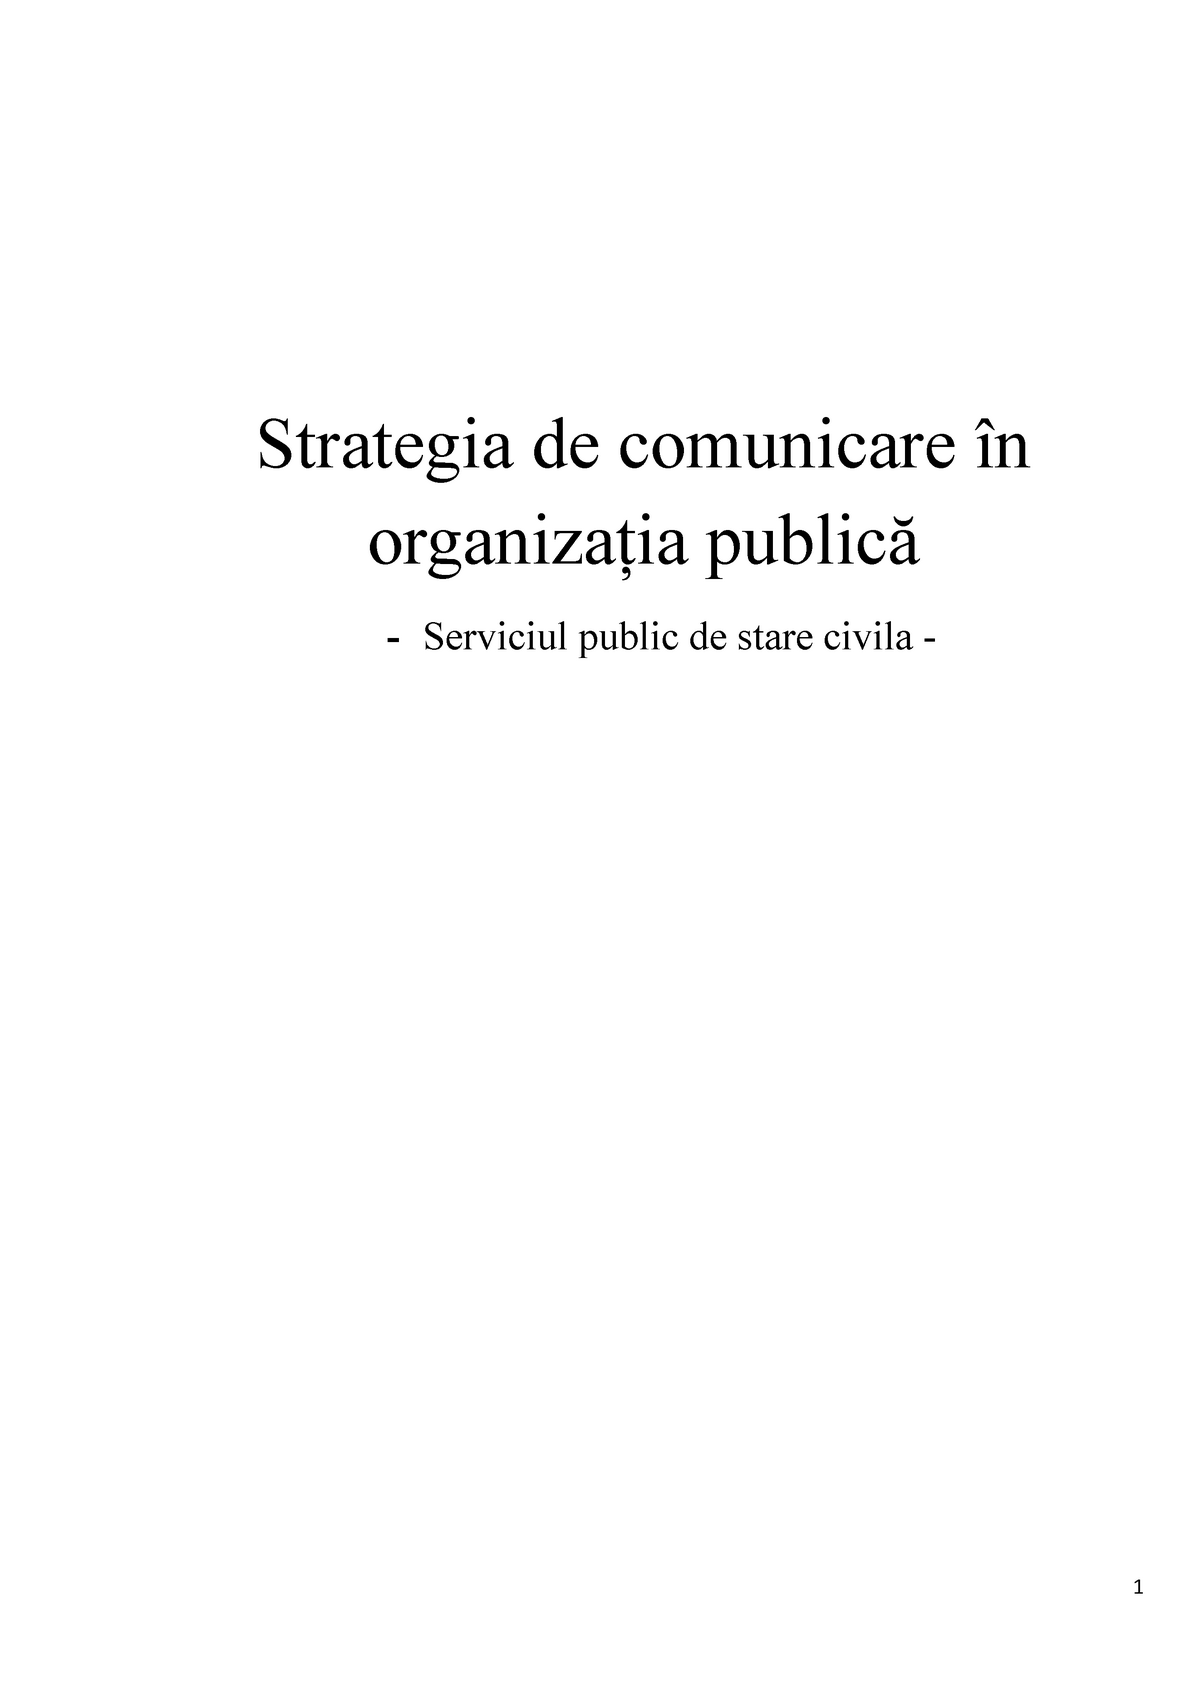 Baron hope Logical Strategia de comunicare în organizaţia publică - Strategia de comunicare în  organizaţia publică - - StuDocu